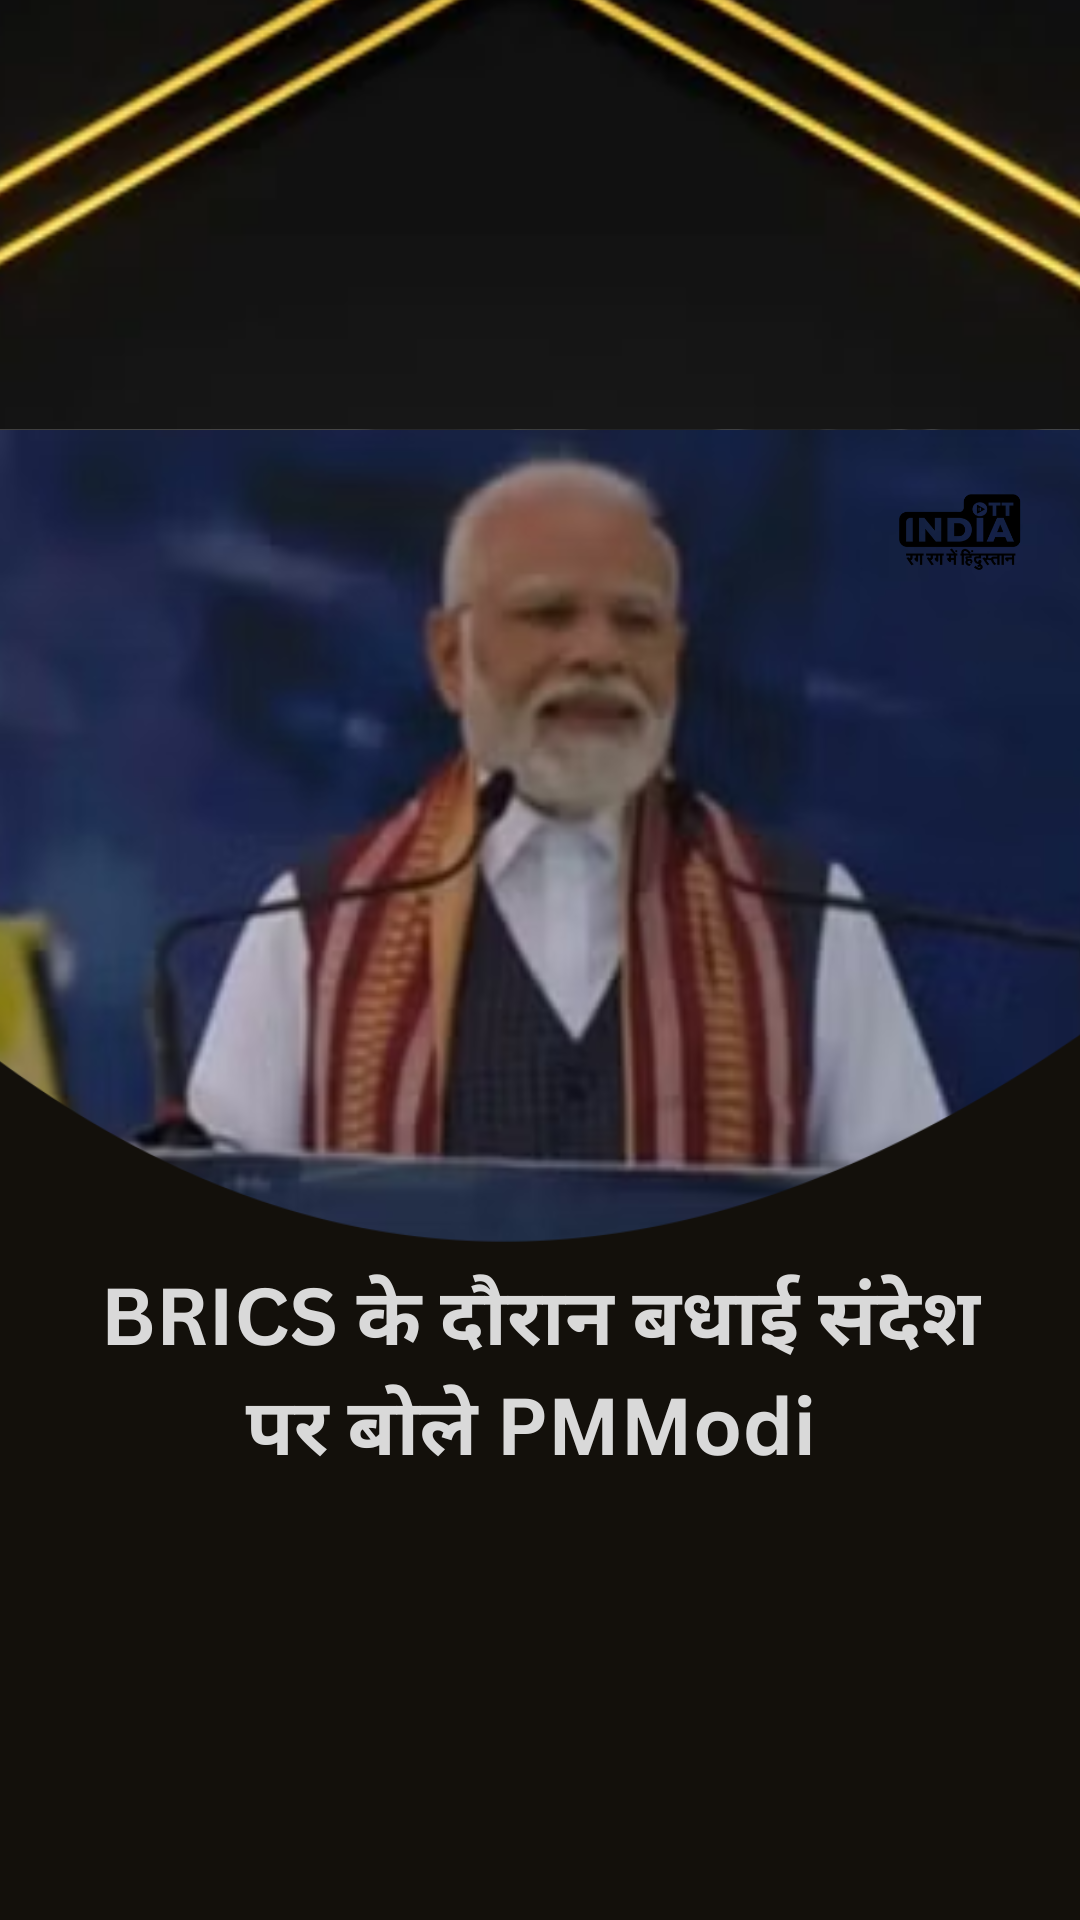 Delhi: PM Modi on congratulatory message during BRICS for Chandrayaan 3